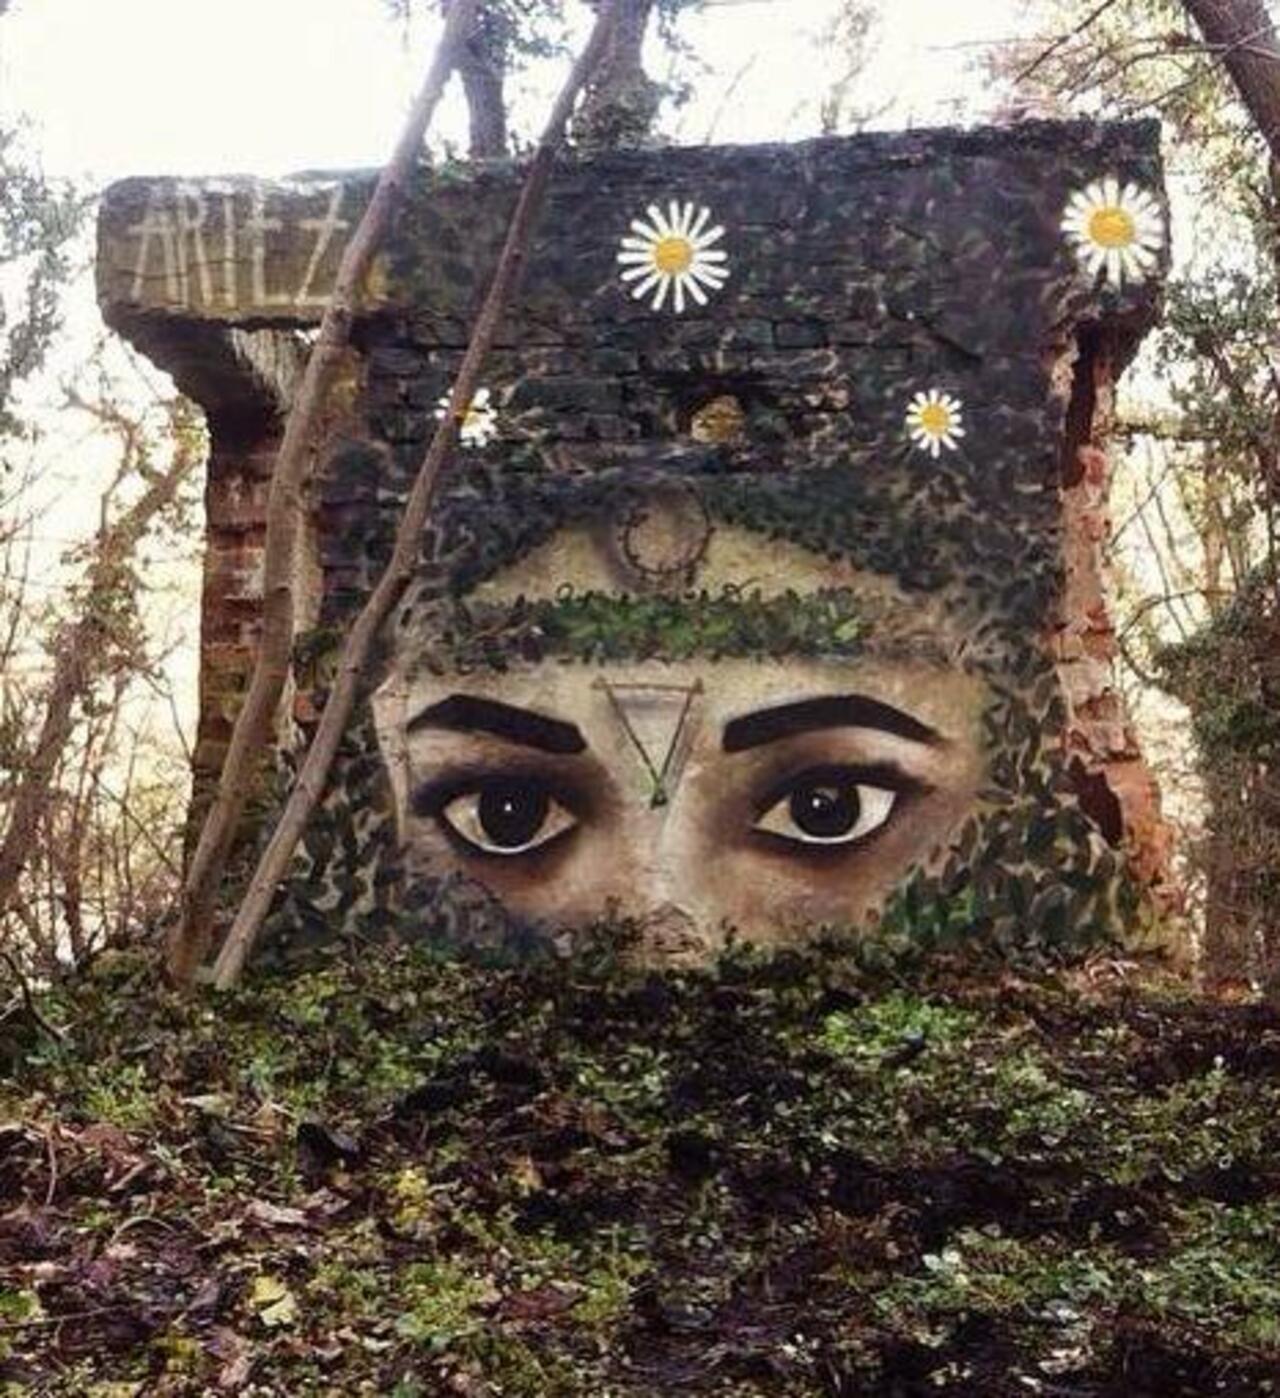 When Street Art meets nature

Work by Artez 
#art #arte #graffiti #streetart http://t.co/TmC2GfZYAF via @GoogleStreetArt